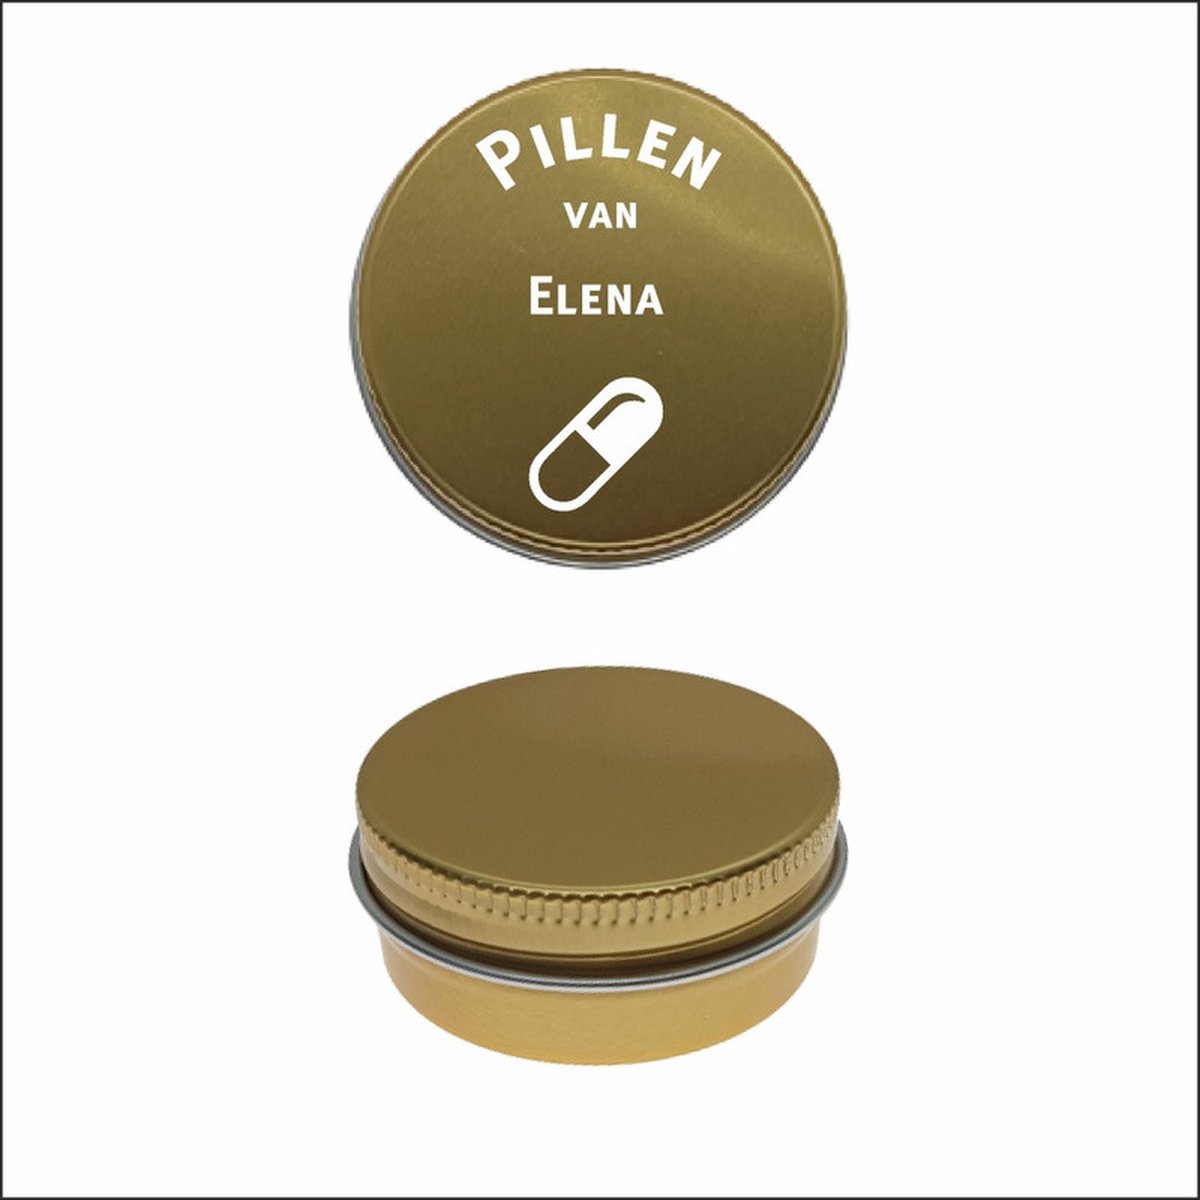 Pillen Blikje Met Naam Gravering - Elena